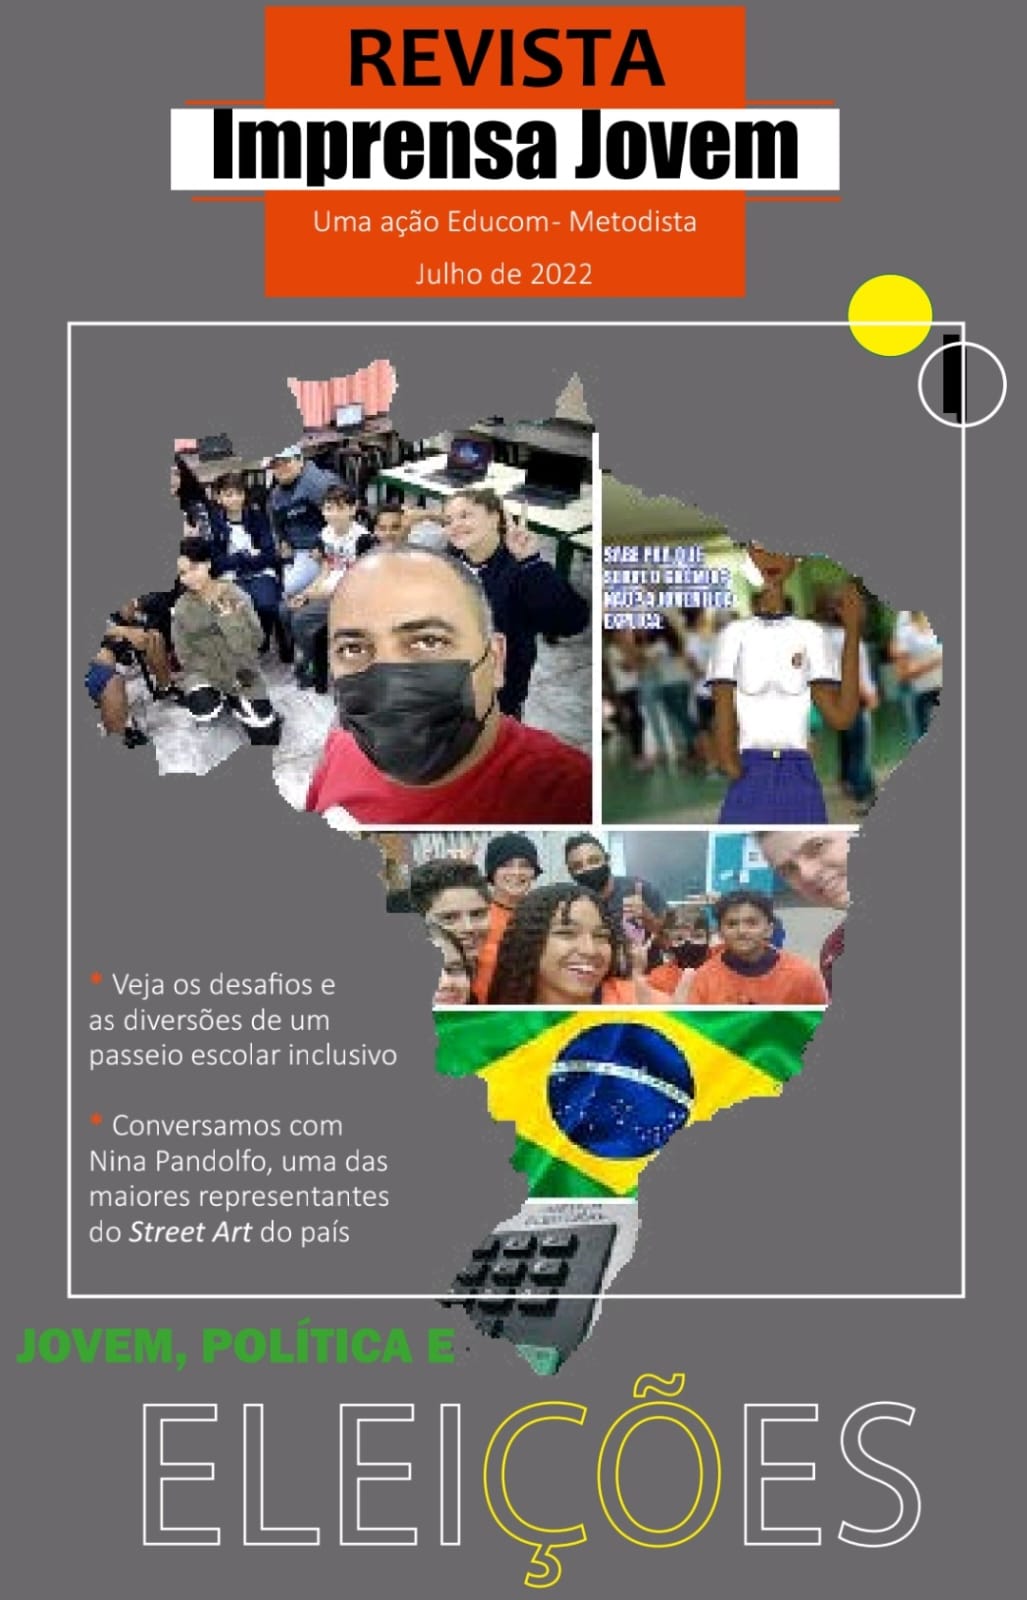 Capa da revista Imprensa Jovem com imagem do mapa do Brasil ilustrado com fotografia de pessoas